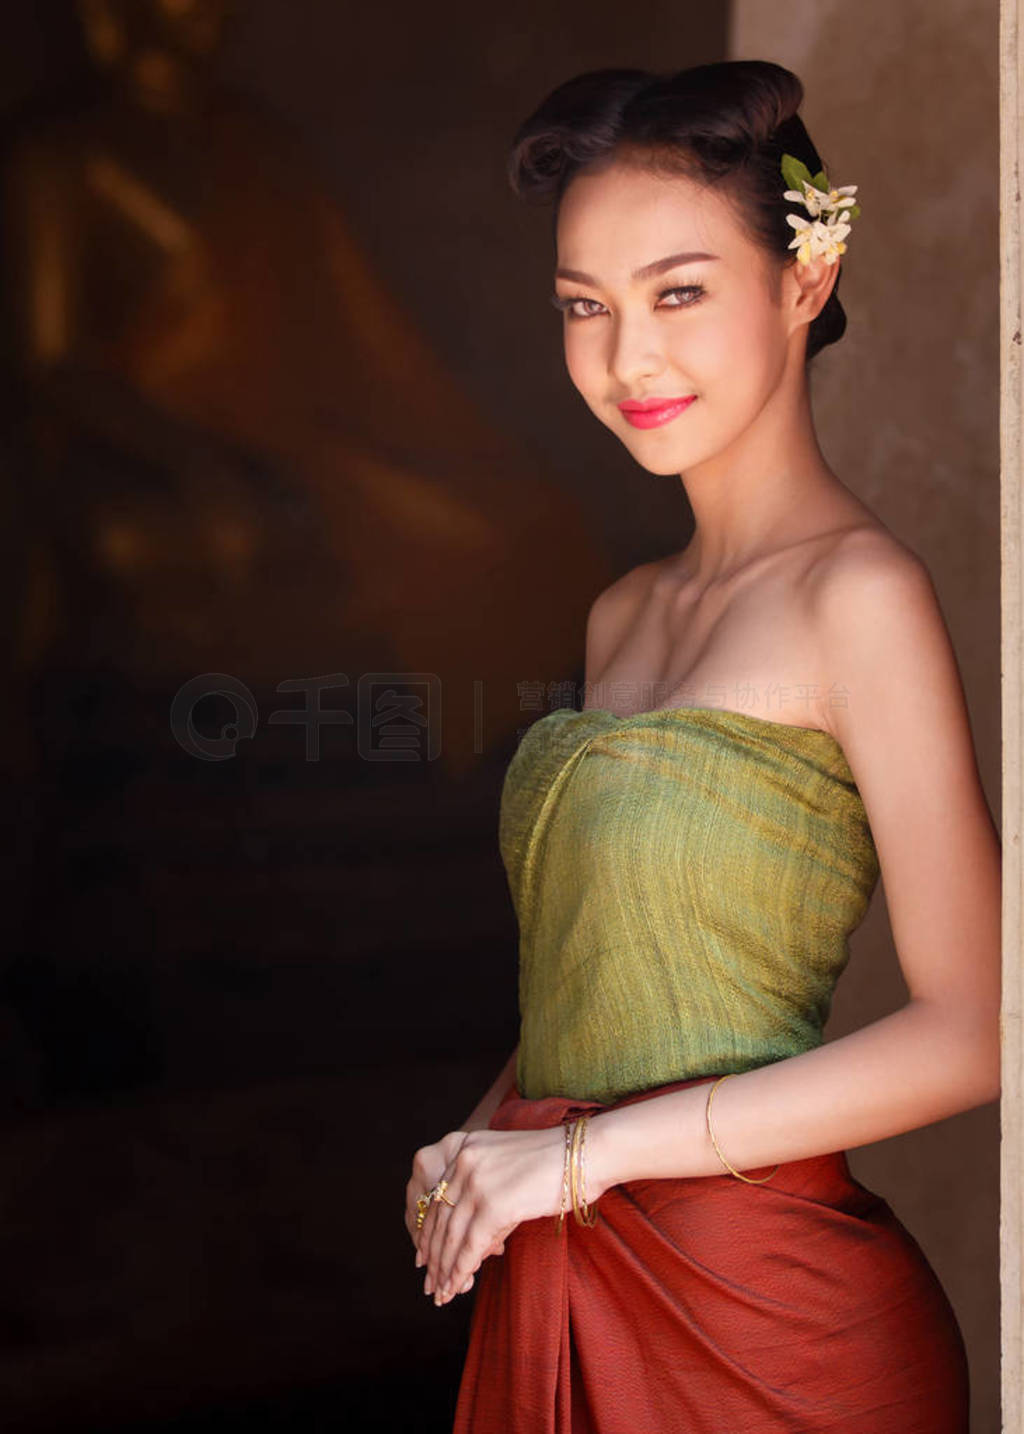 泰国传统服装的美丽的泰国女孩 库存图片. 图片 包括有 舞蹈, 女性, 装饰品, 布料, 方面, 室外, 五颜六色 - 72235753